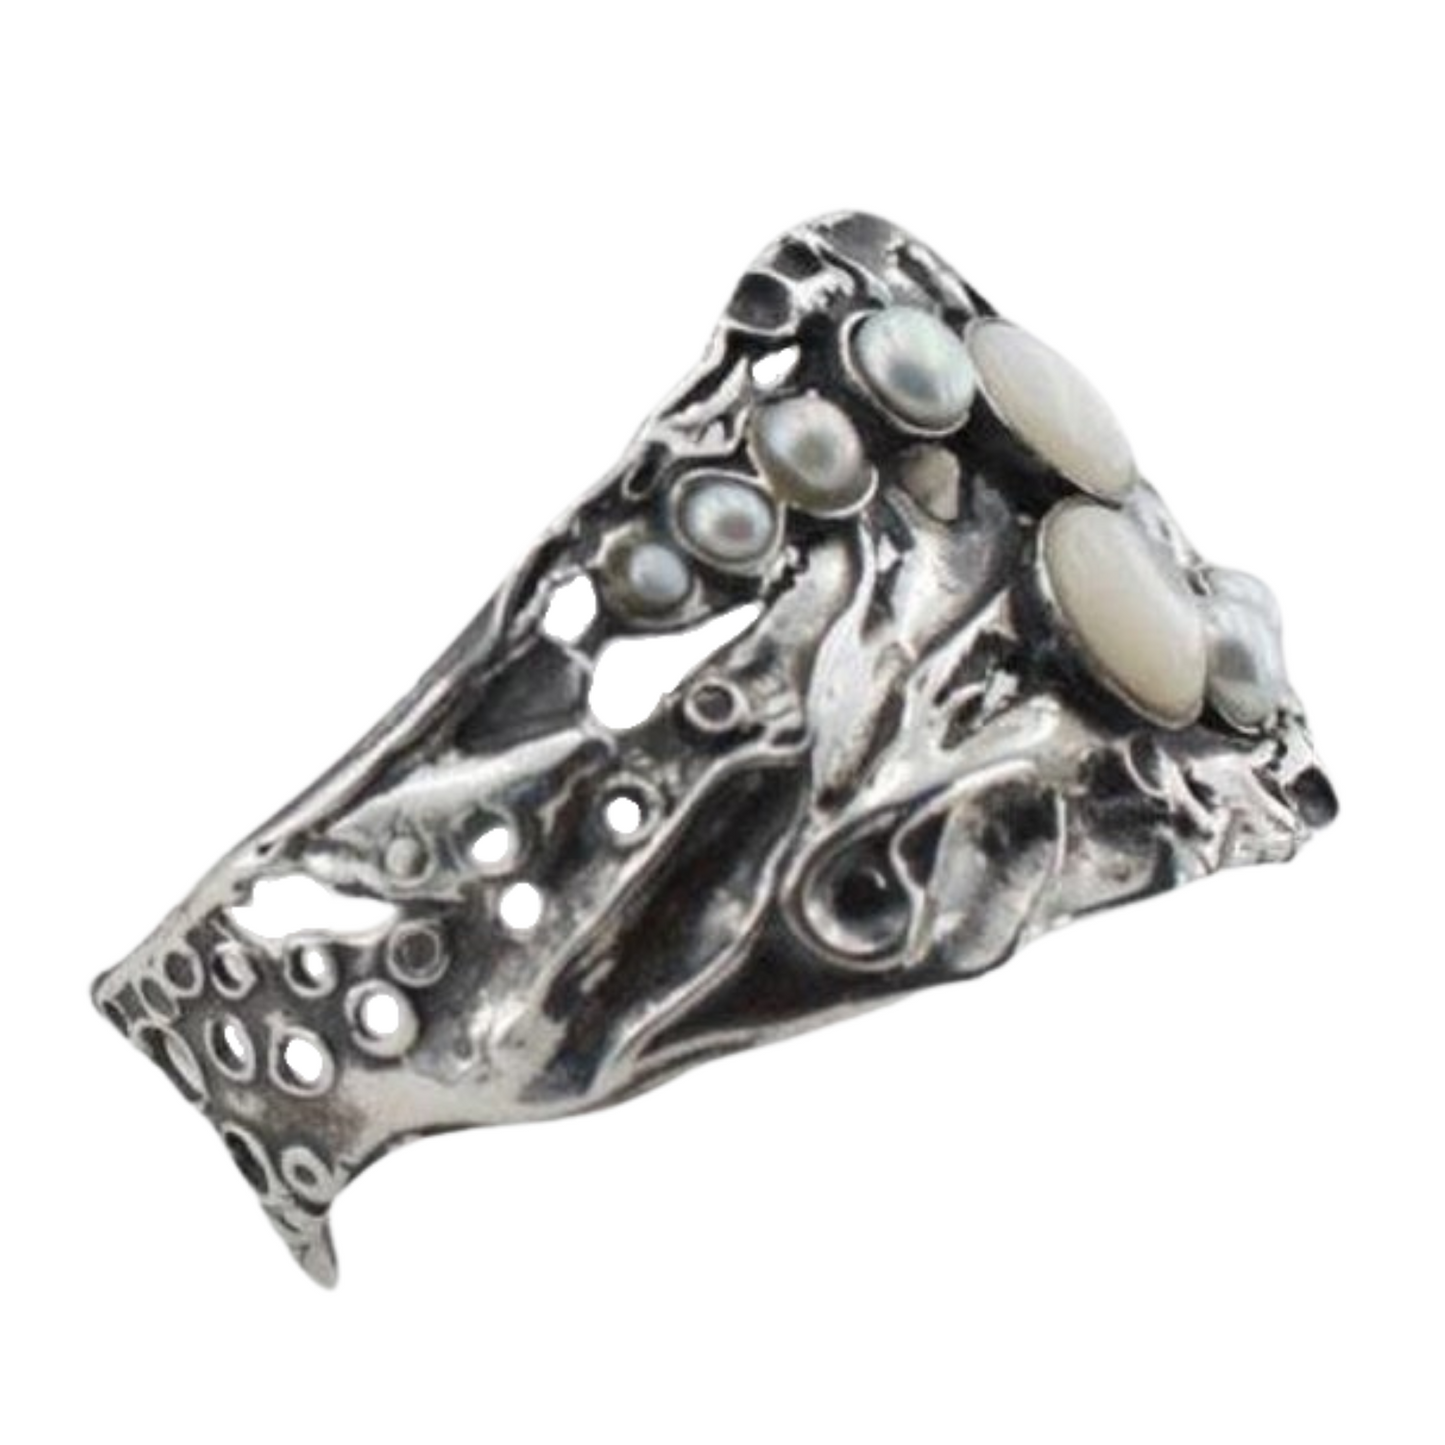 Opalit and Pearls Cuff Bracelet, Sterling Silver Bracelet with Opalit and pearls, statement jewelry, artistic fine jewelry bracelet